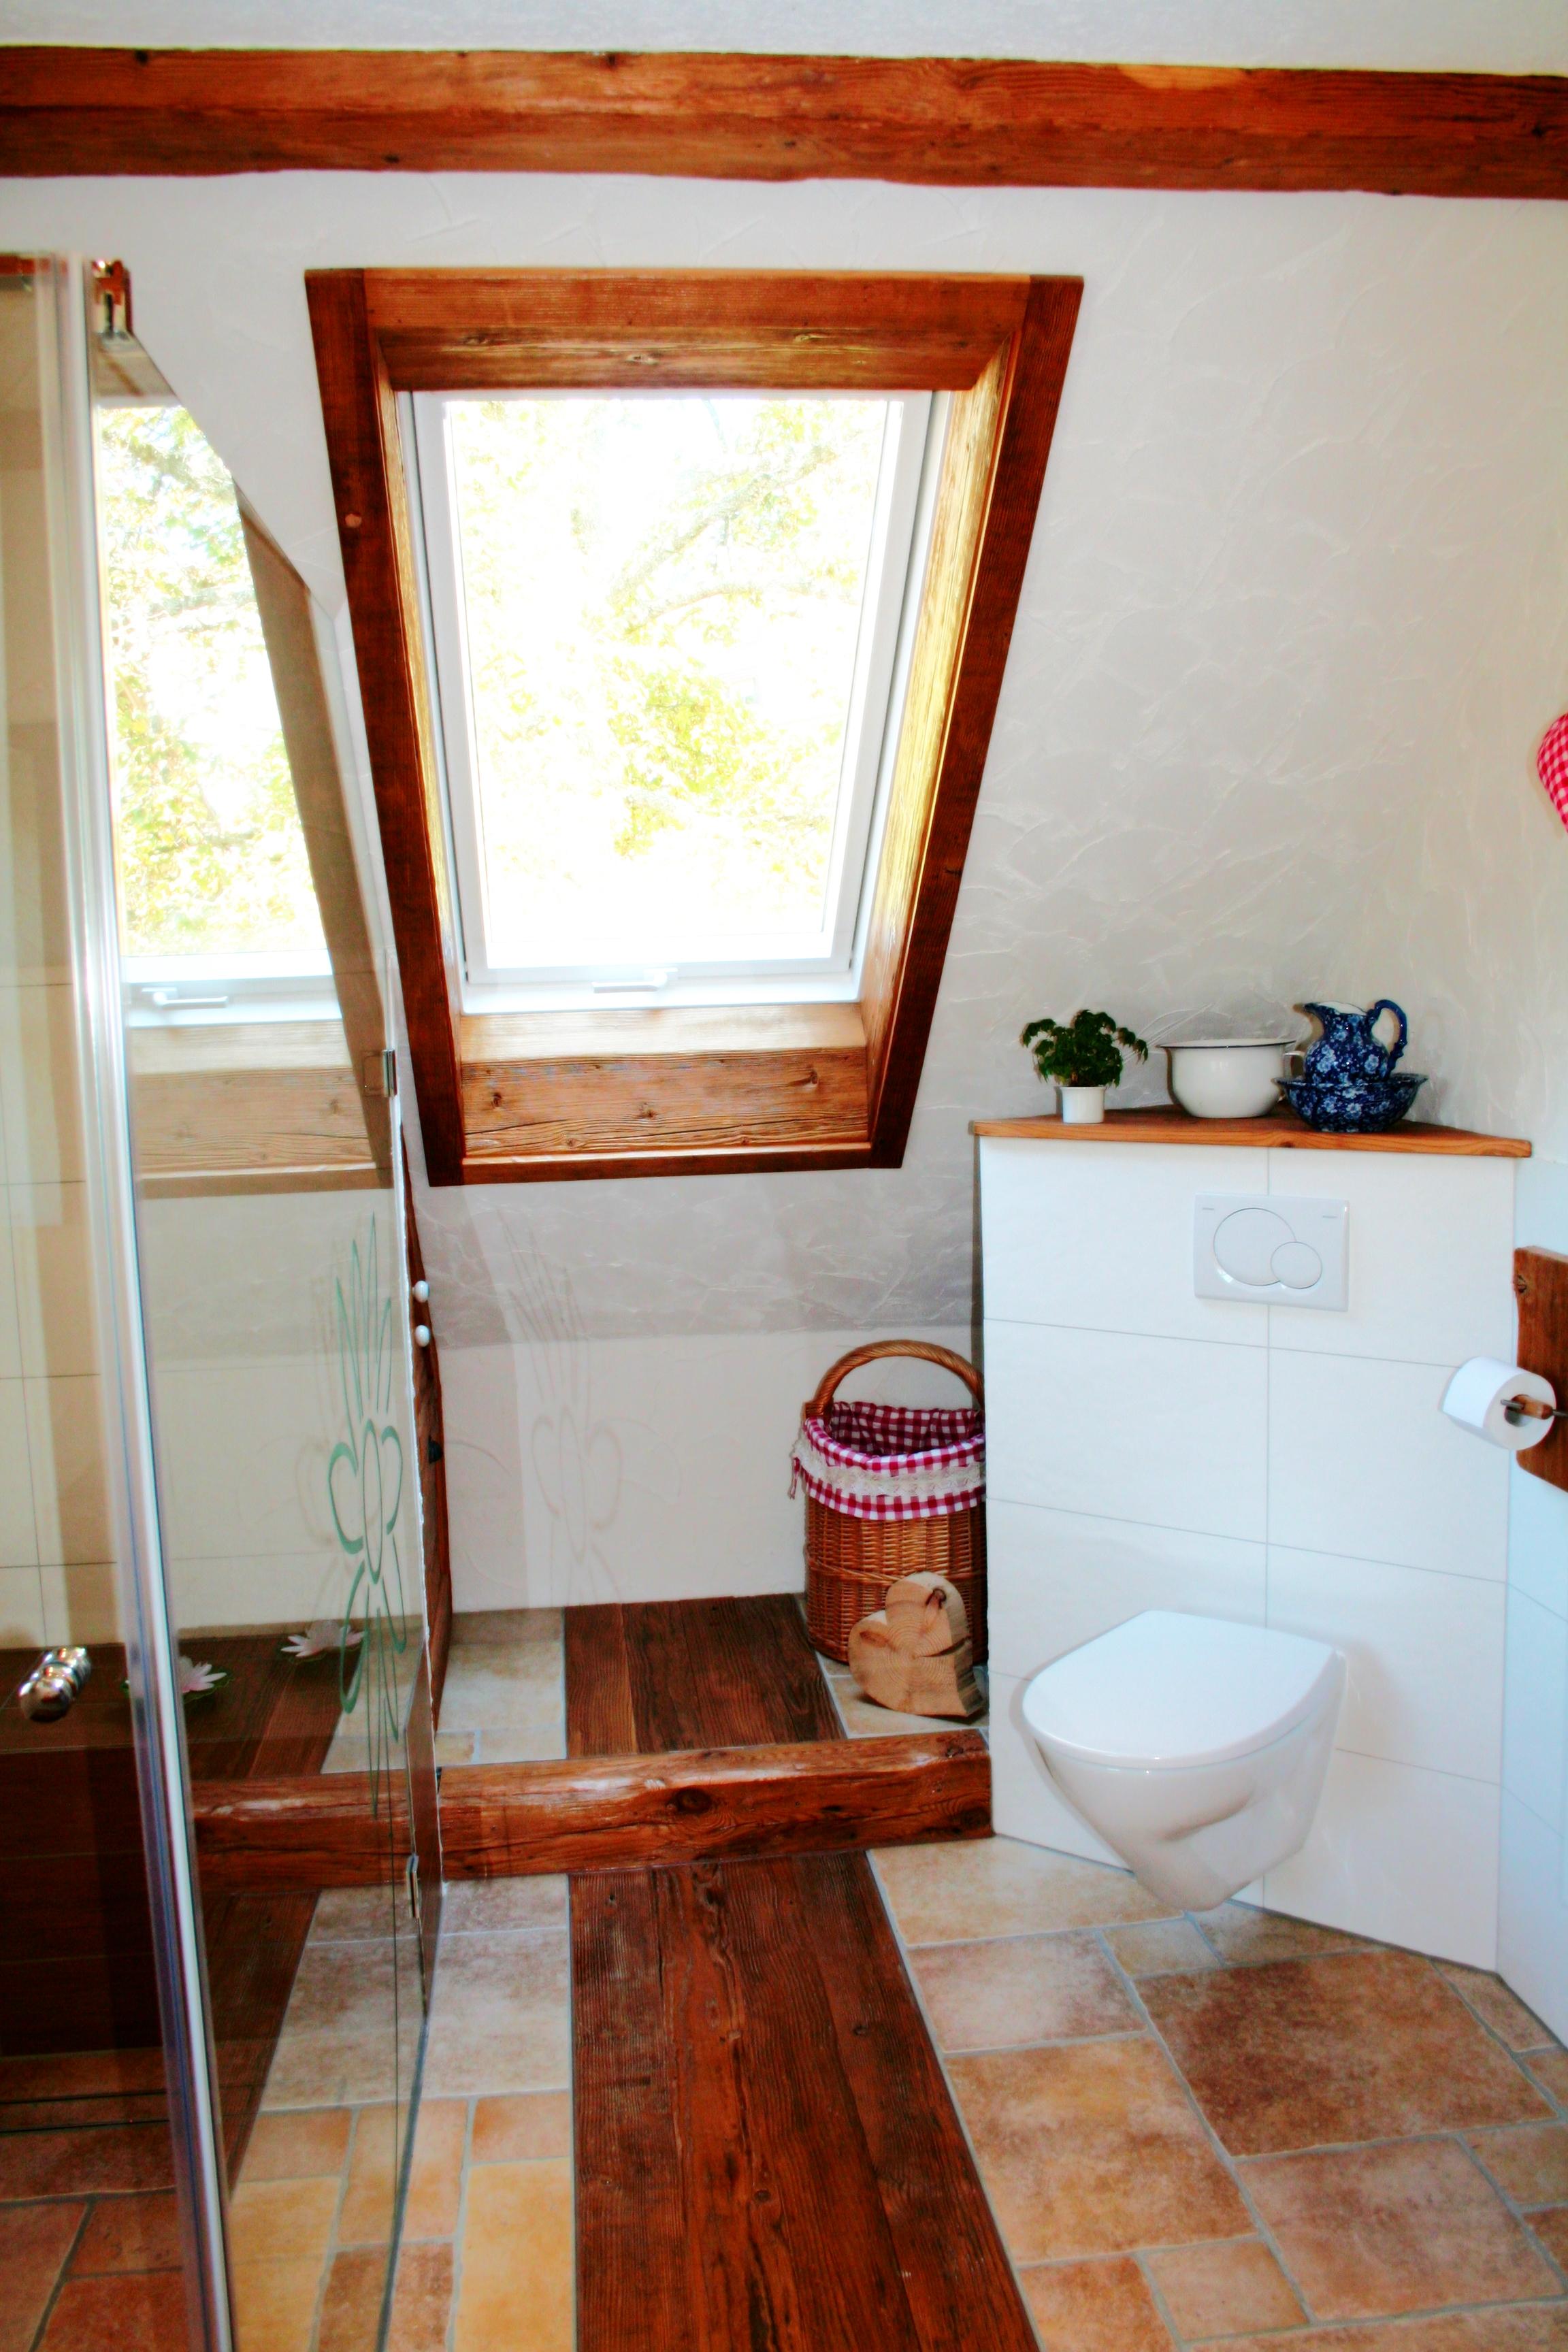 Badezimmer #dachschräge #dachfenster #badezimmer #handarbeit ©Christoph Weißer